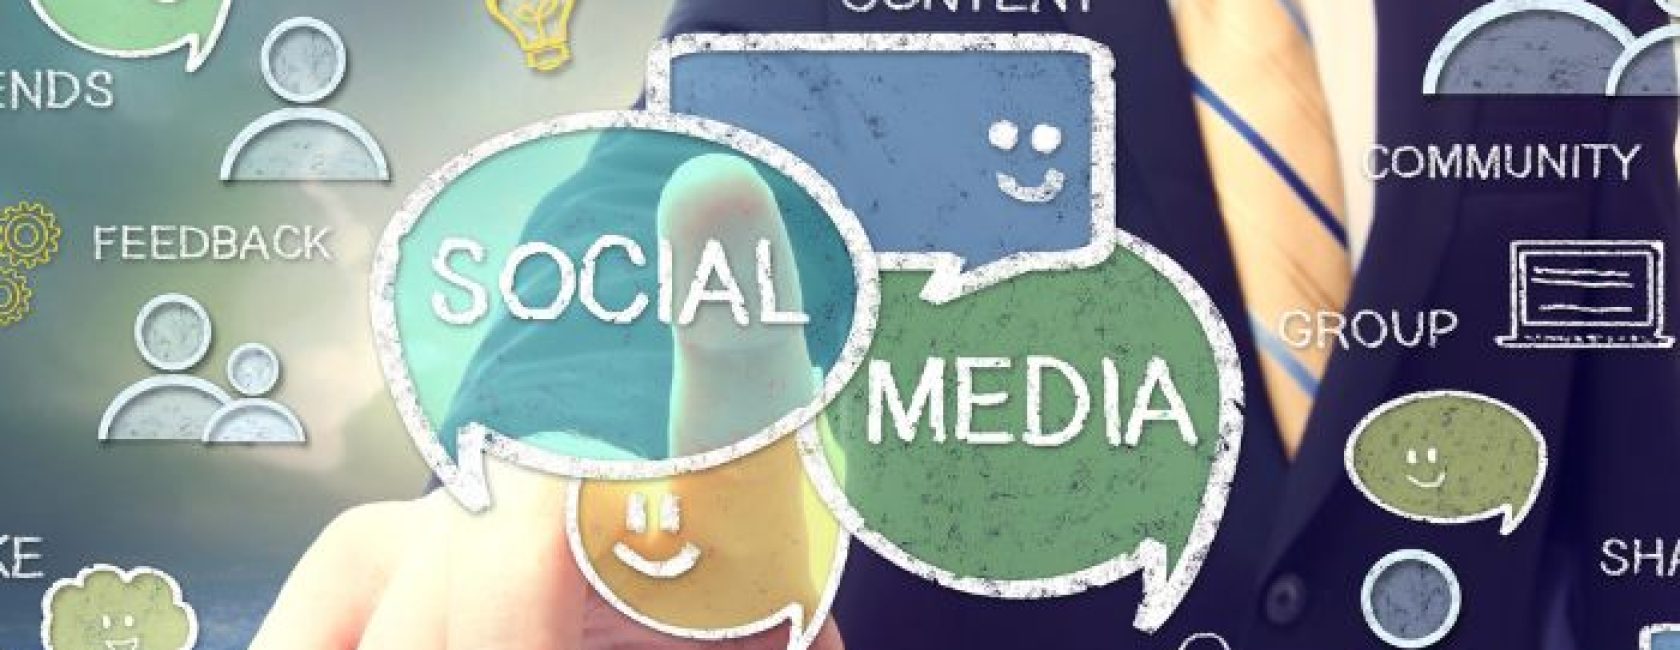 Social-Media-Marketing-easy-online-media-3